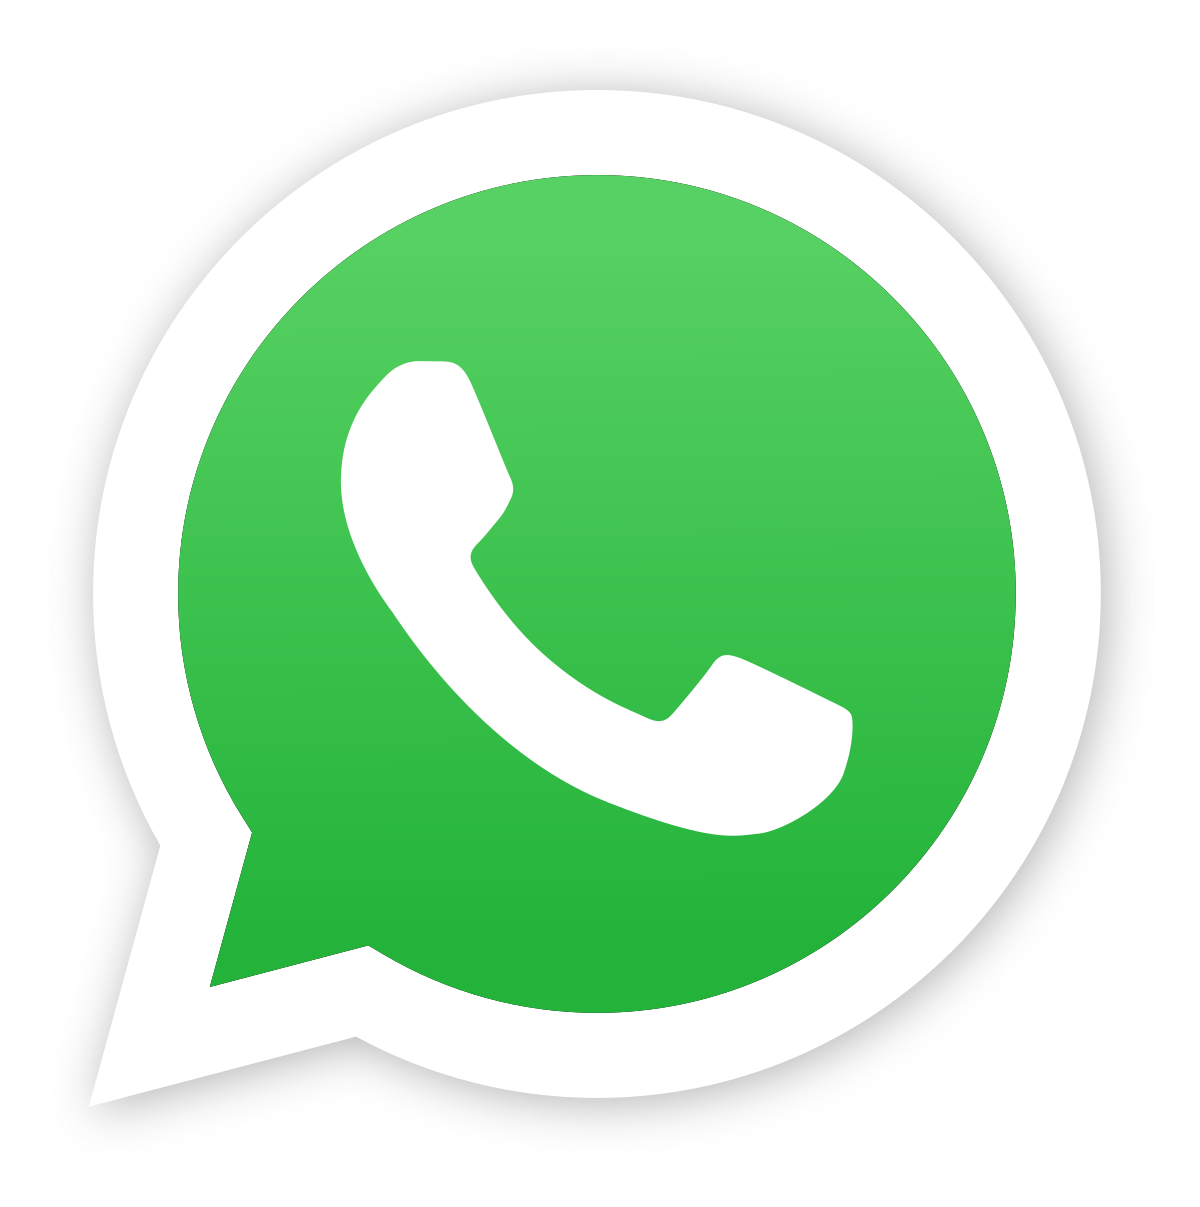 Whatsapp marketing